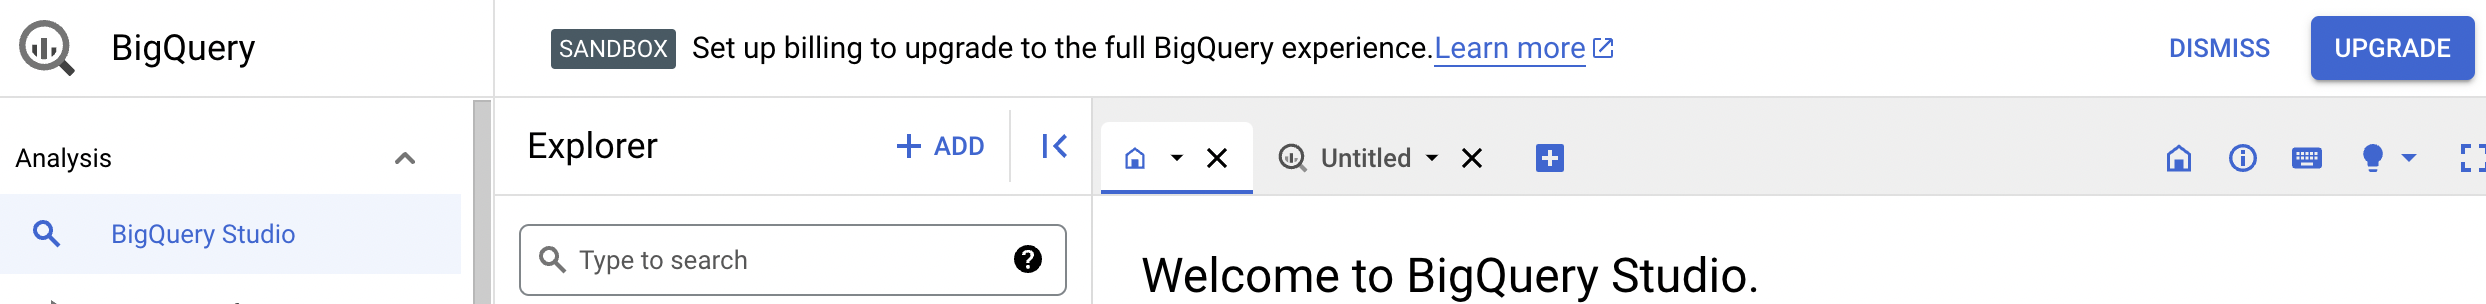 L'avviso di conferma offre la possibilità di eseguire l'upgrade all'esperienza BigQuery completa.